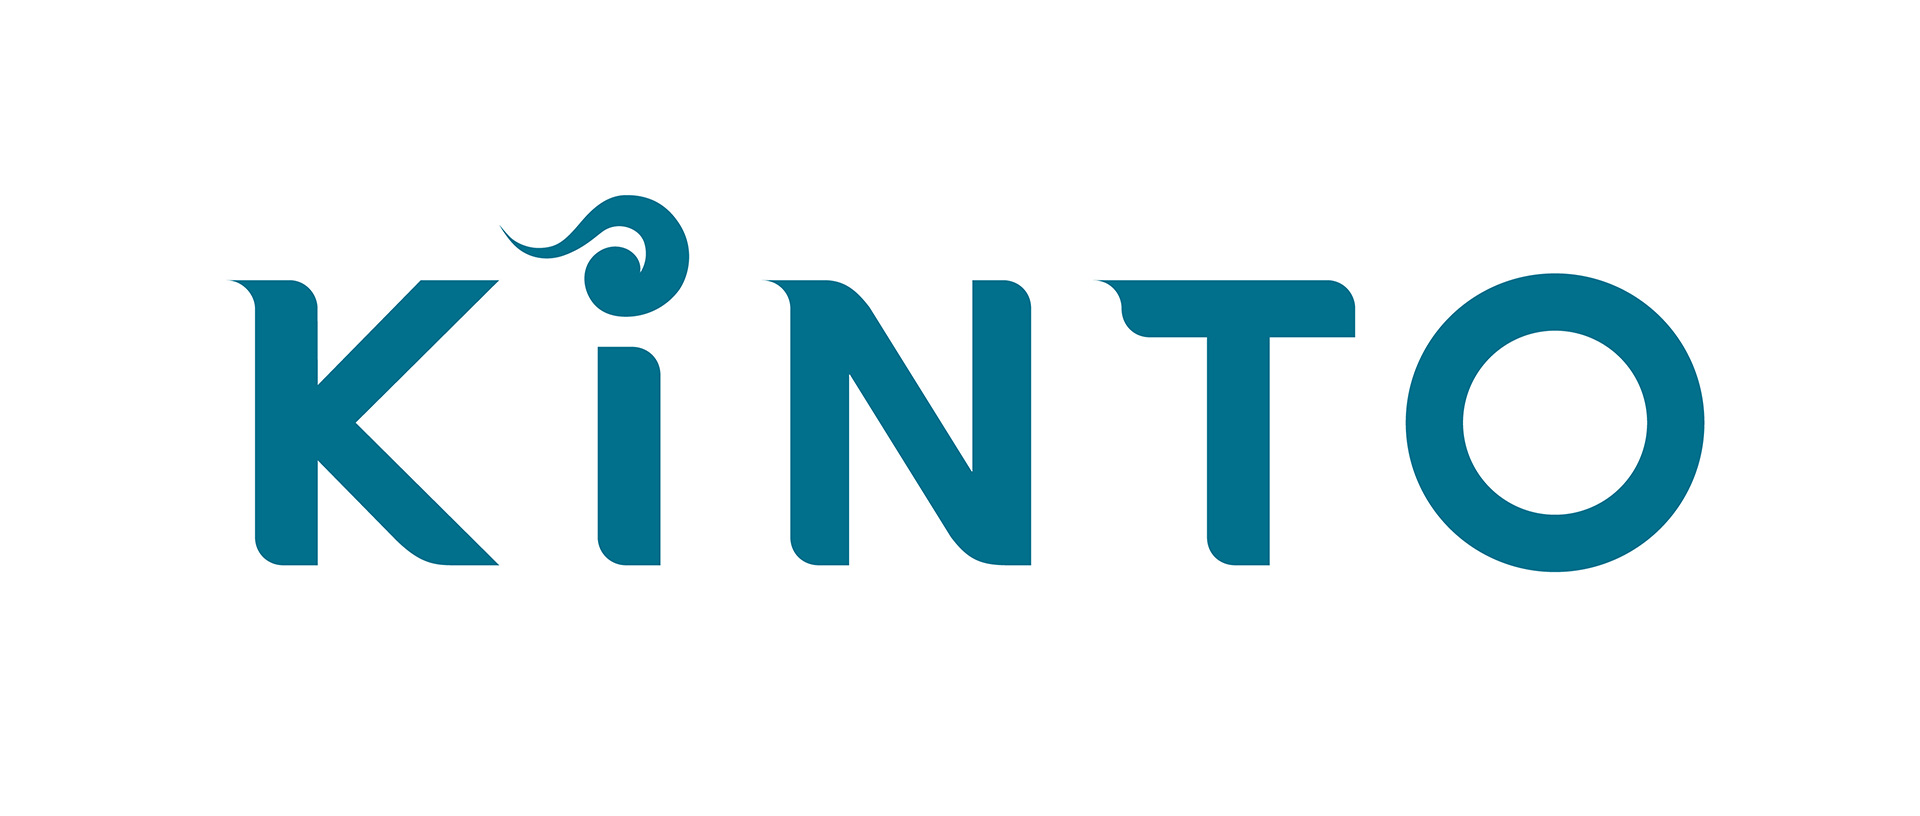 Logo KINTO